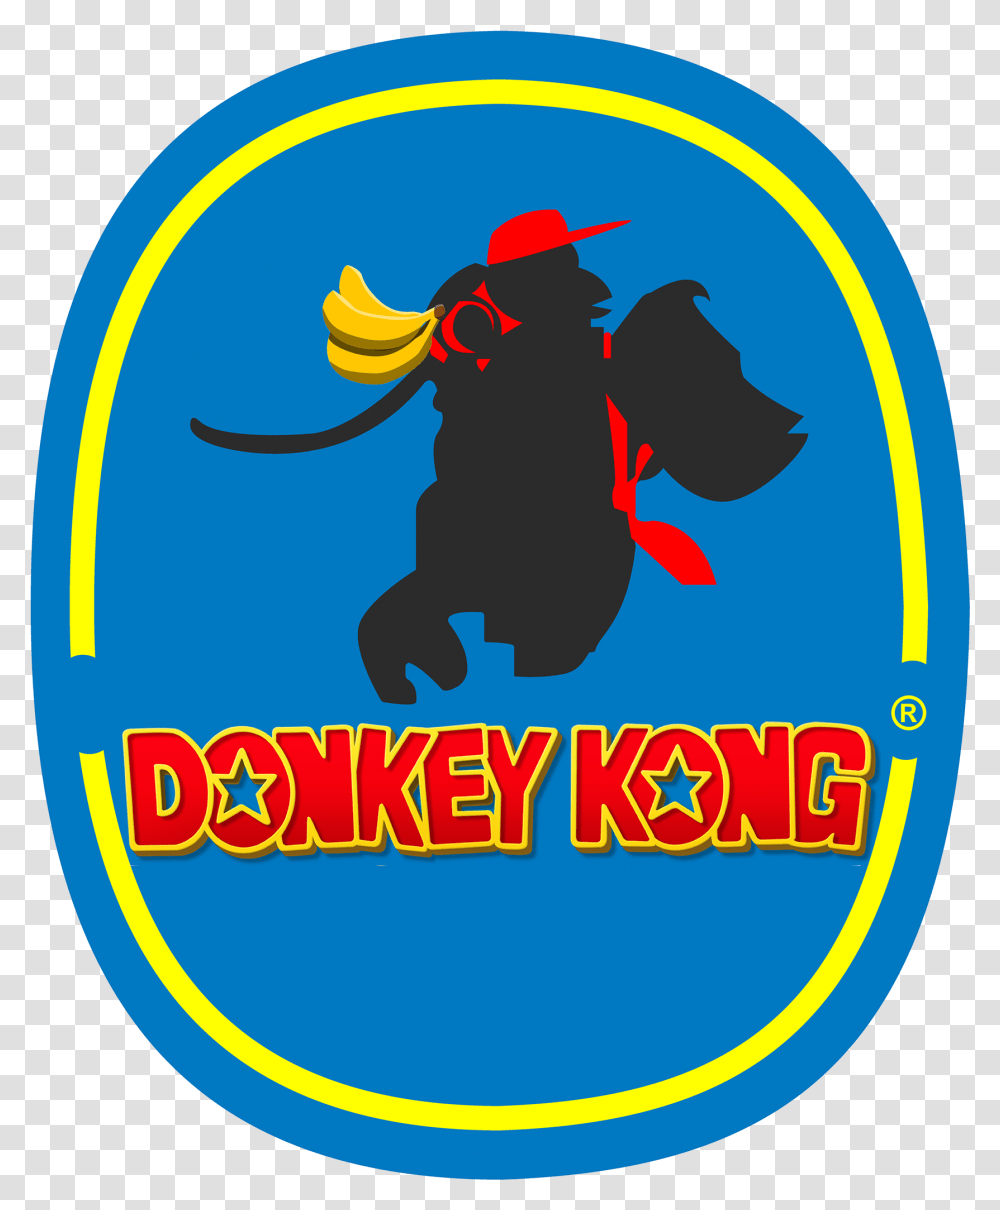 Donkey Kong Banana Company Logo Produce Fruits Bananas Illustration, Label, Poster, Advertisement Transparent Png